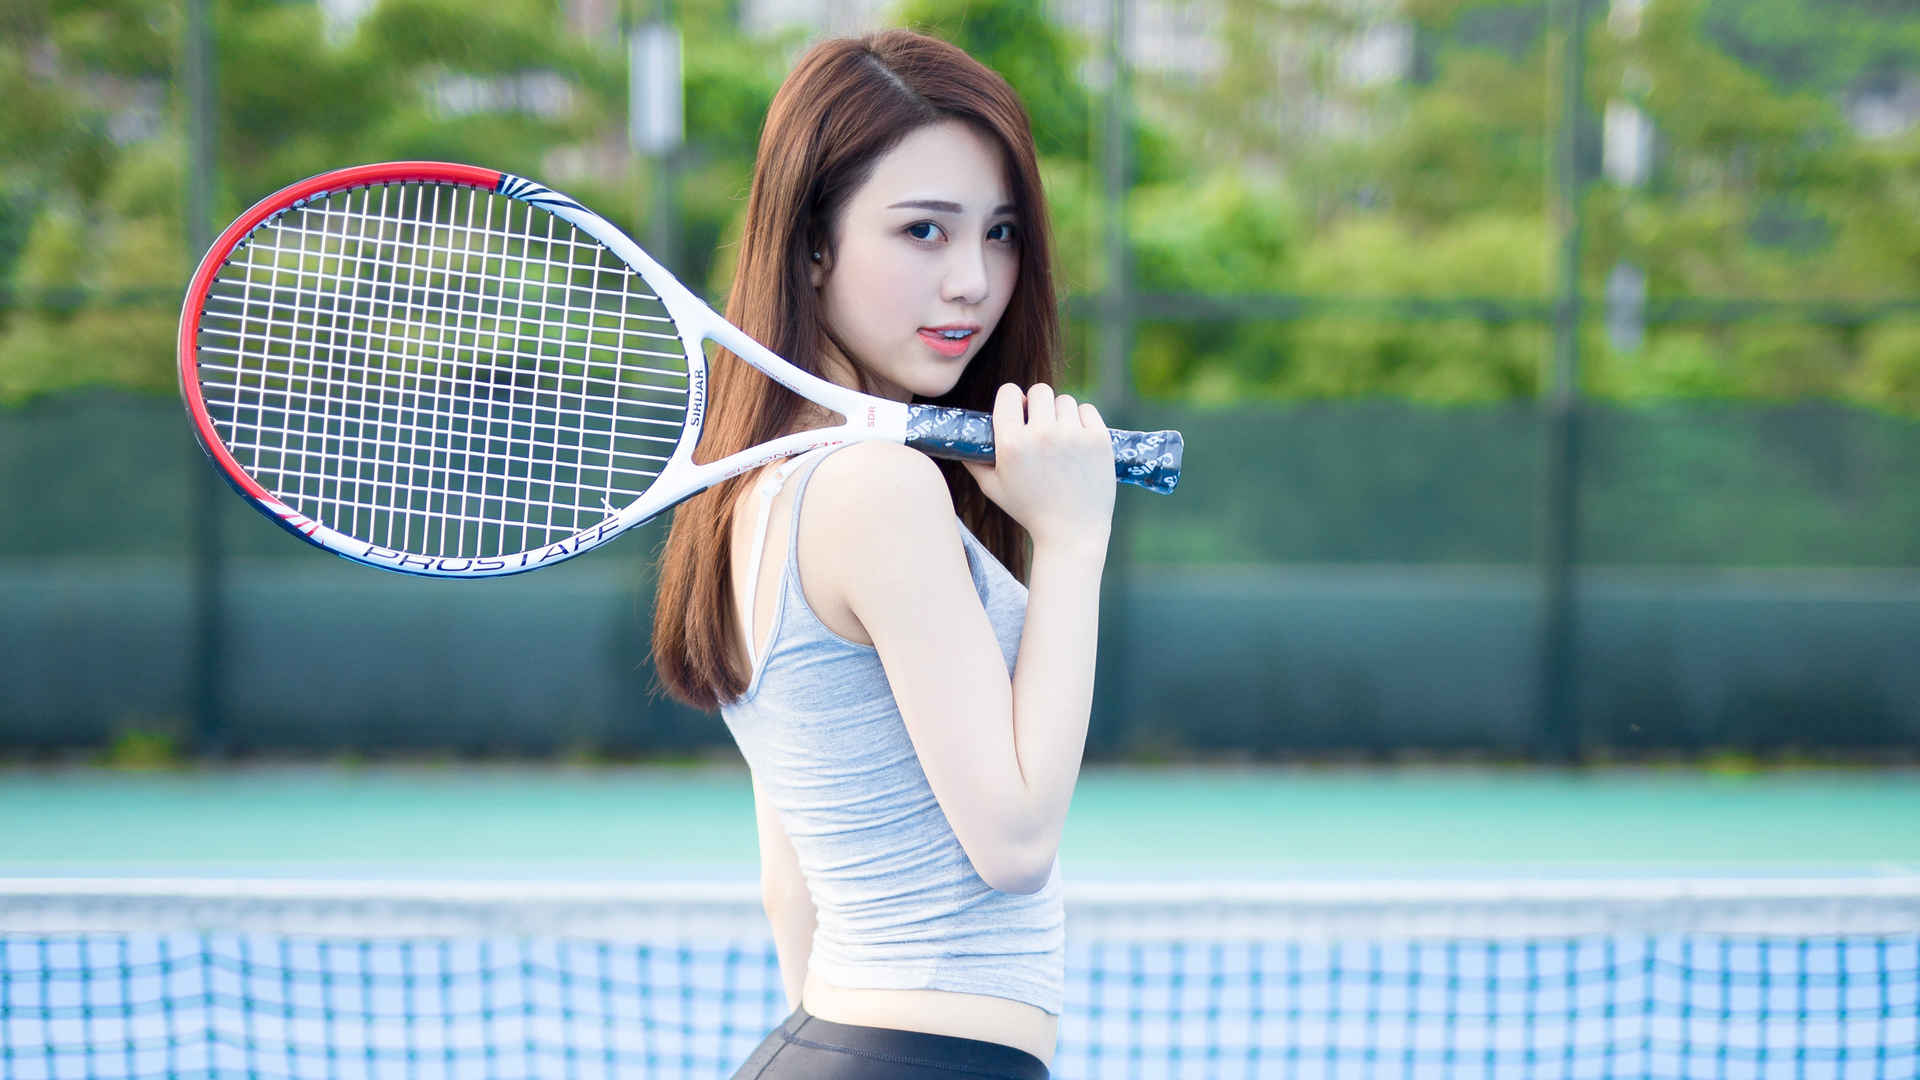 个性网球美女4K壁纸